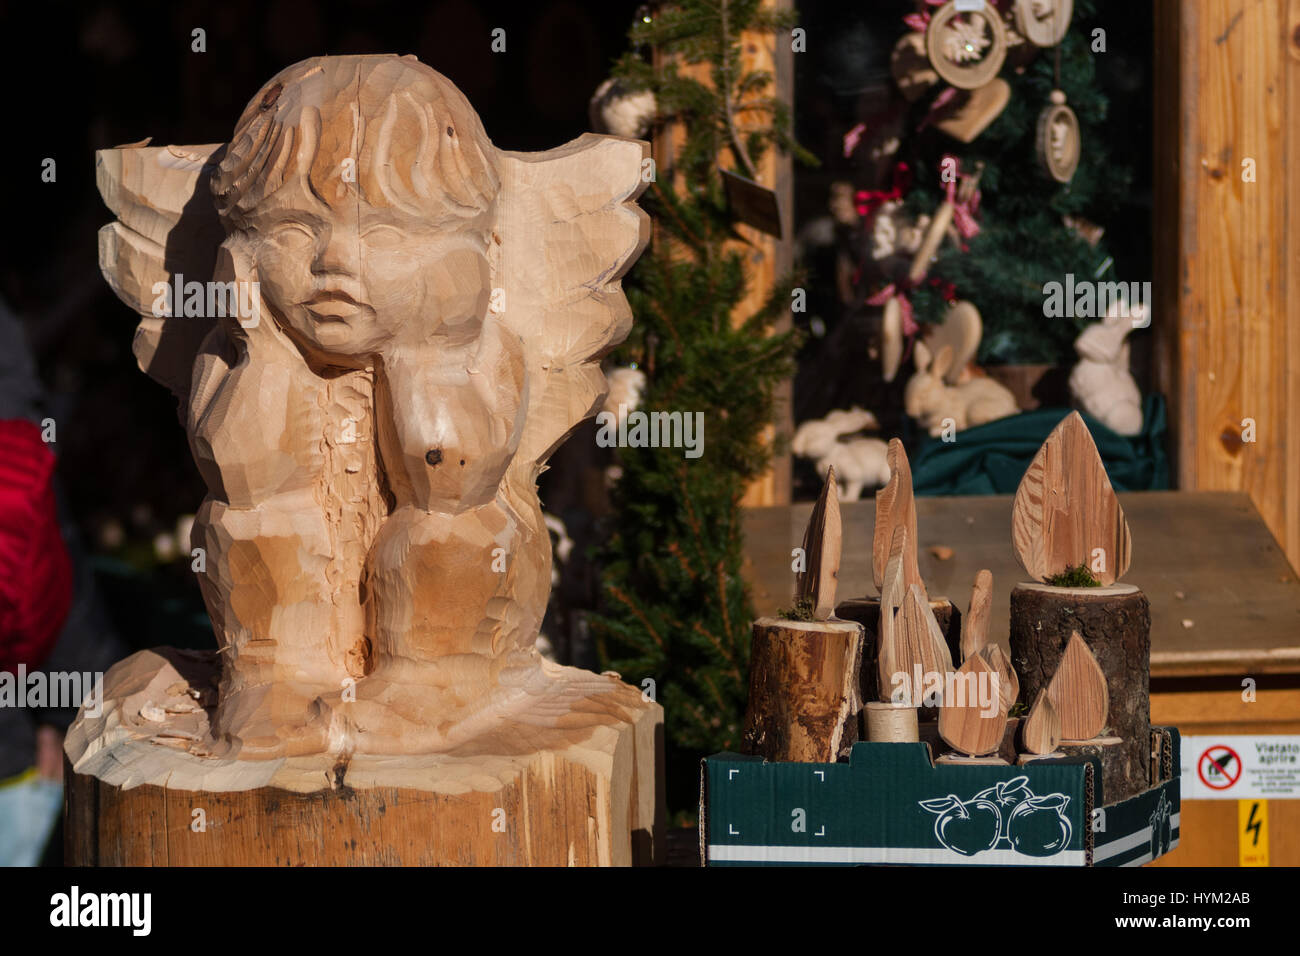 Un angelo in legno è mostrato in corrispondenza i tradizionali mercatini di Natale di Bolzano, in Italia. Foto Stock